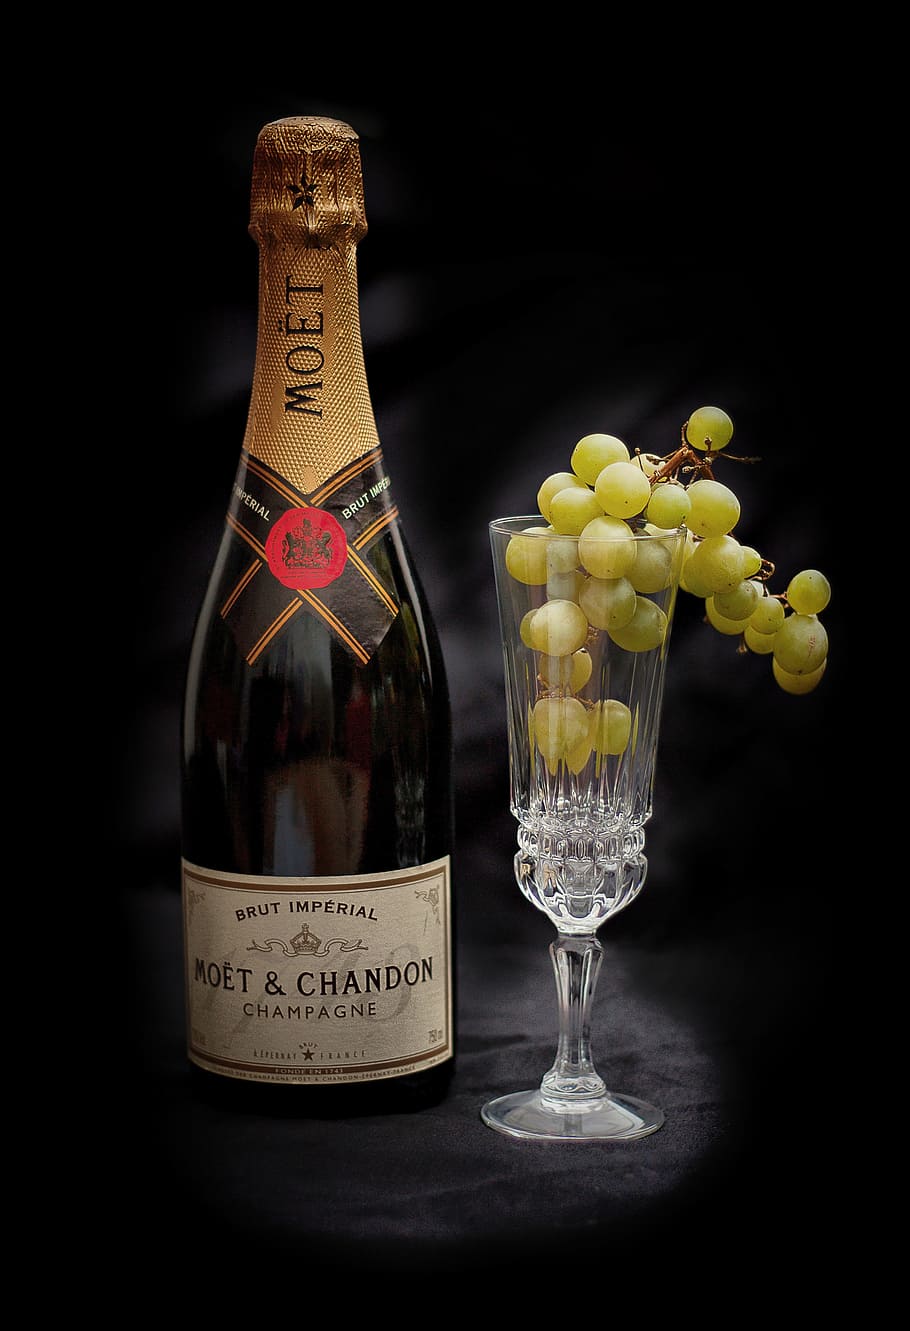 Noet & Chandon champagne bottle, Drink, Sparkling Wine, Wine, Bottle